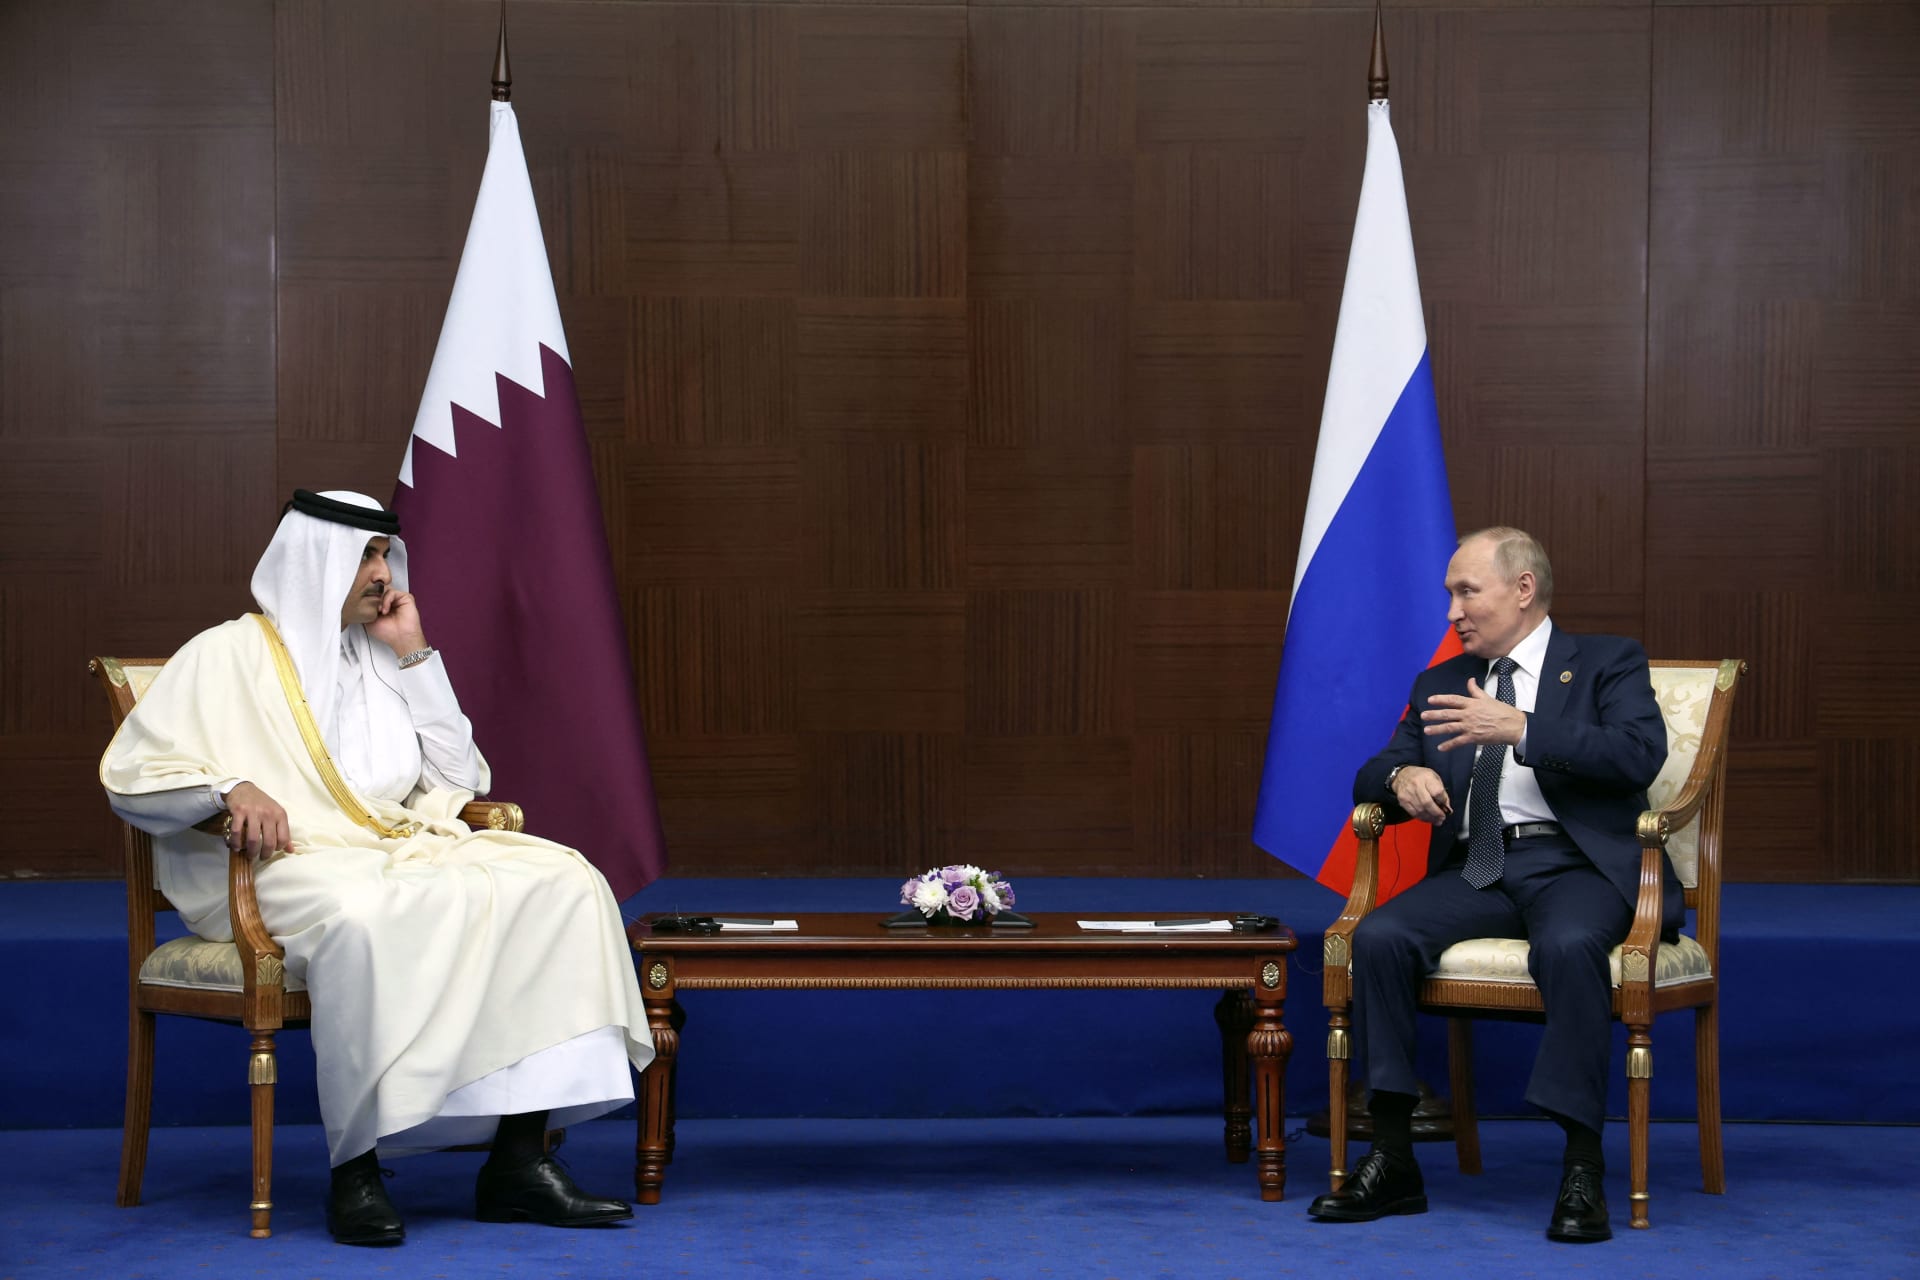 مصدر لـCNN: لقاء أمير قطر وبوتين كان لـ"نزع فتيل" التوترات بين البلدين